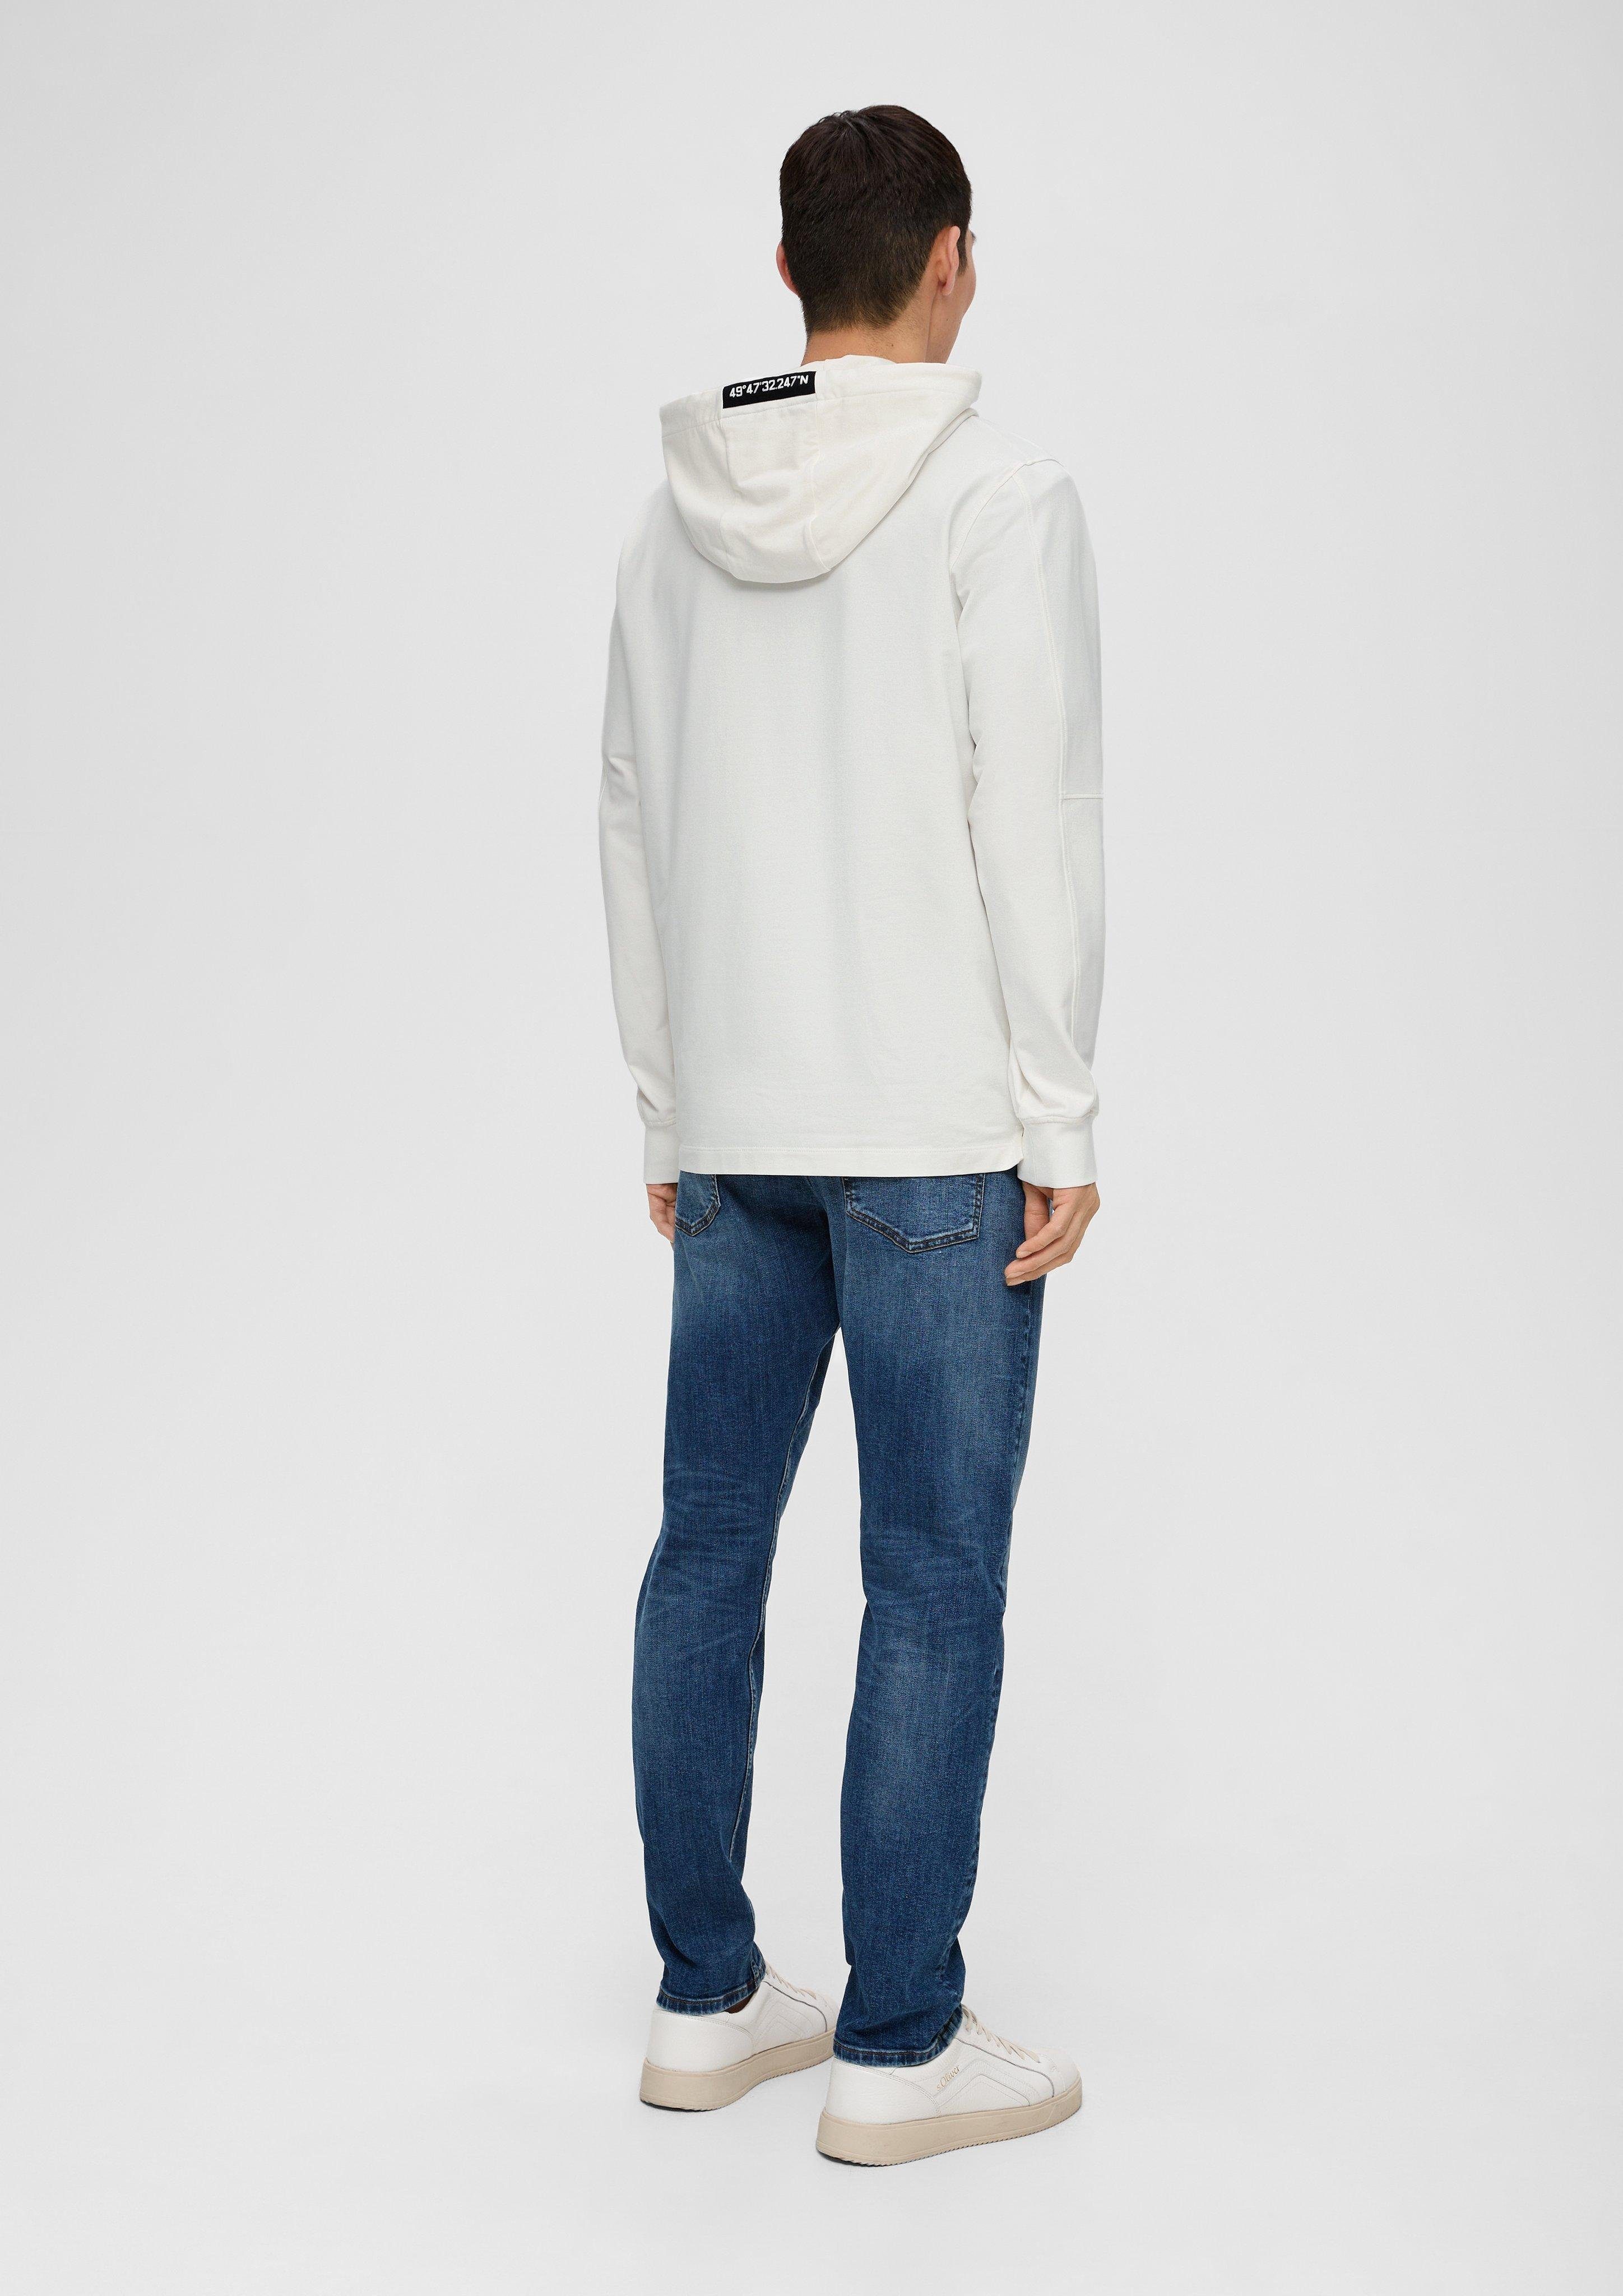 WHITE s.Oliver Sweatshirt Baumwollstretch aus Reißverschluss Hoodie